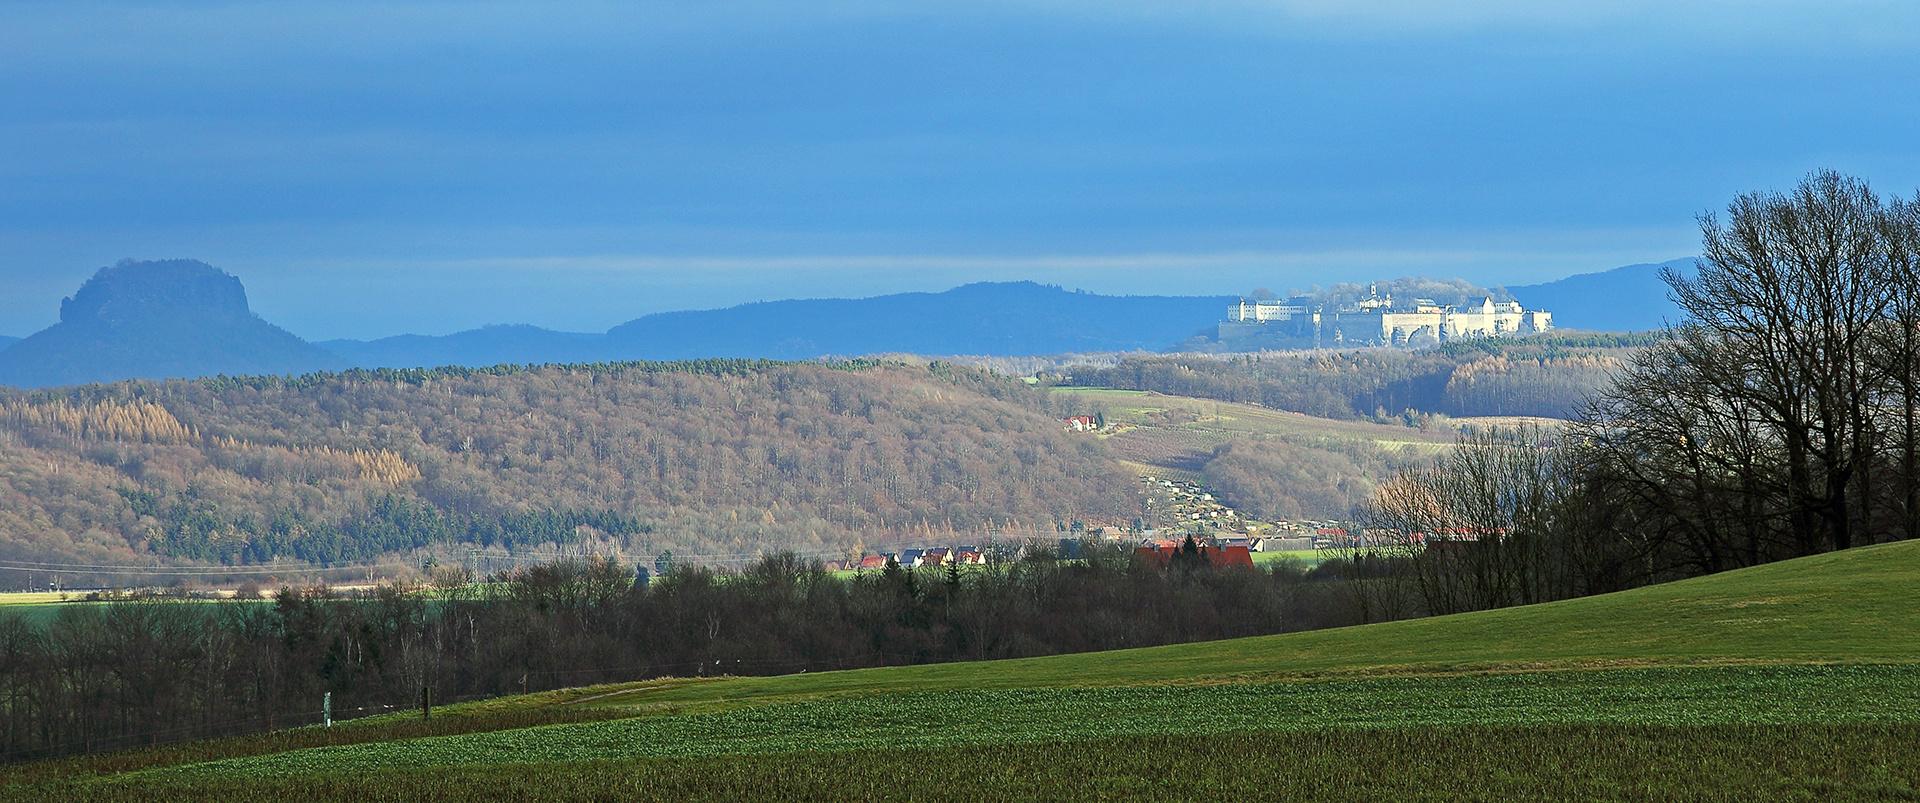 Oberhalb von Falkenhain habe ich einen solchen Blick auf die Festung Königstein  ...